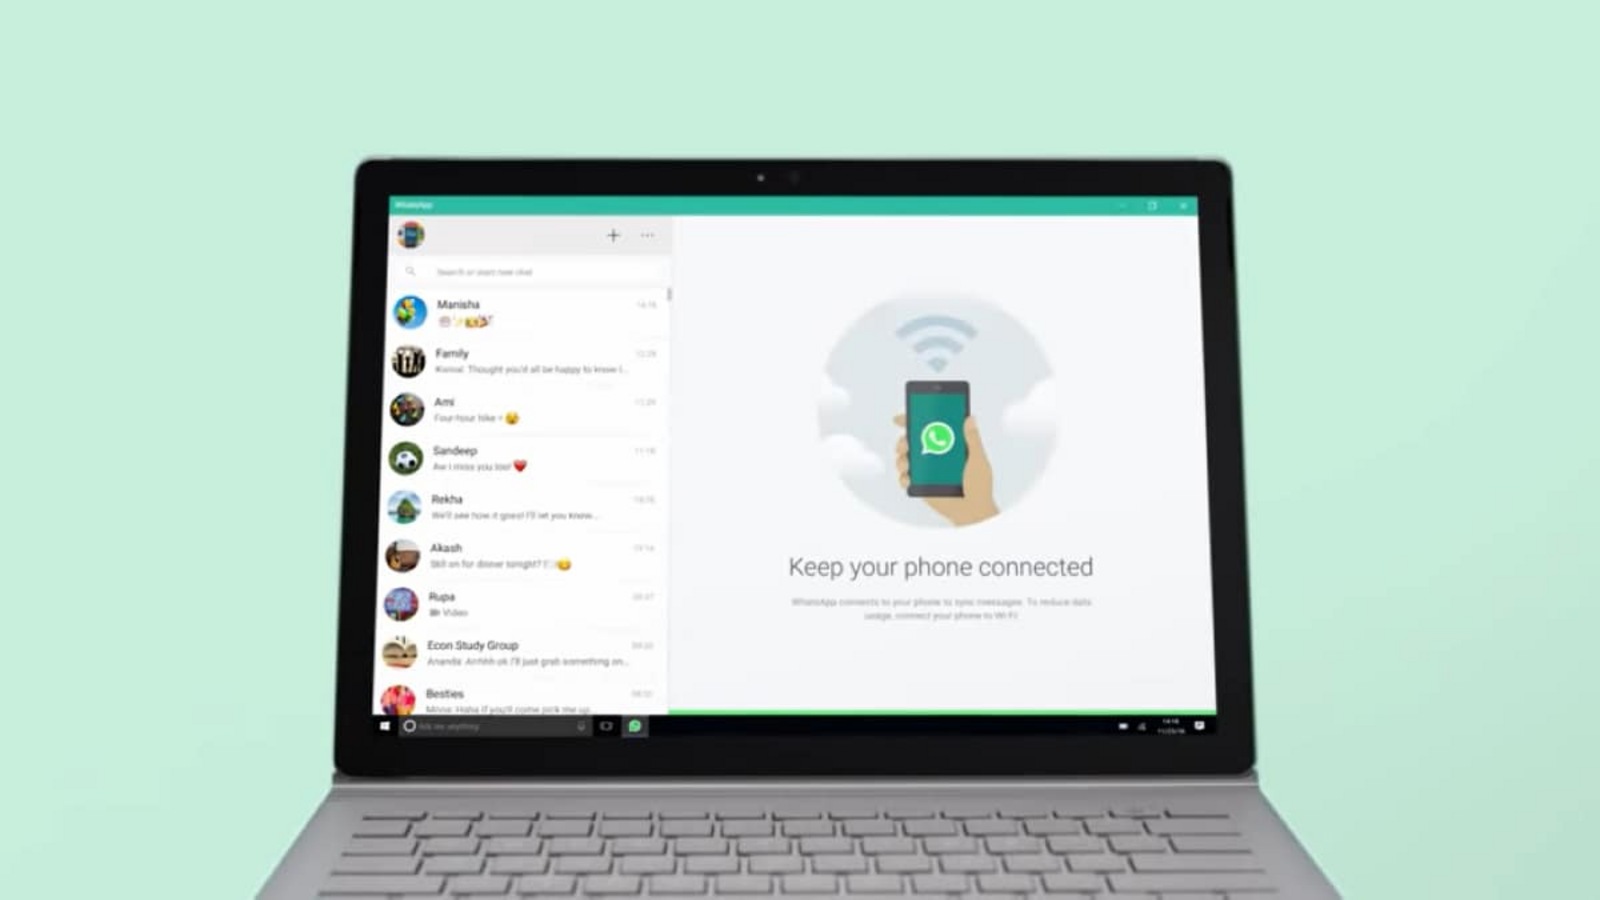 Envíate un mensaje a ti mismo en WhatsApp: ahora puedes hacerlo desde tu PC con Windows